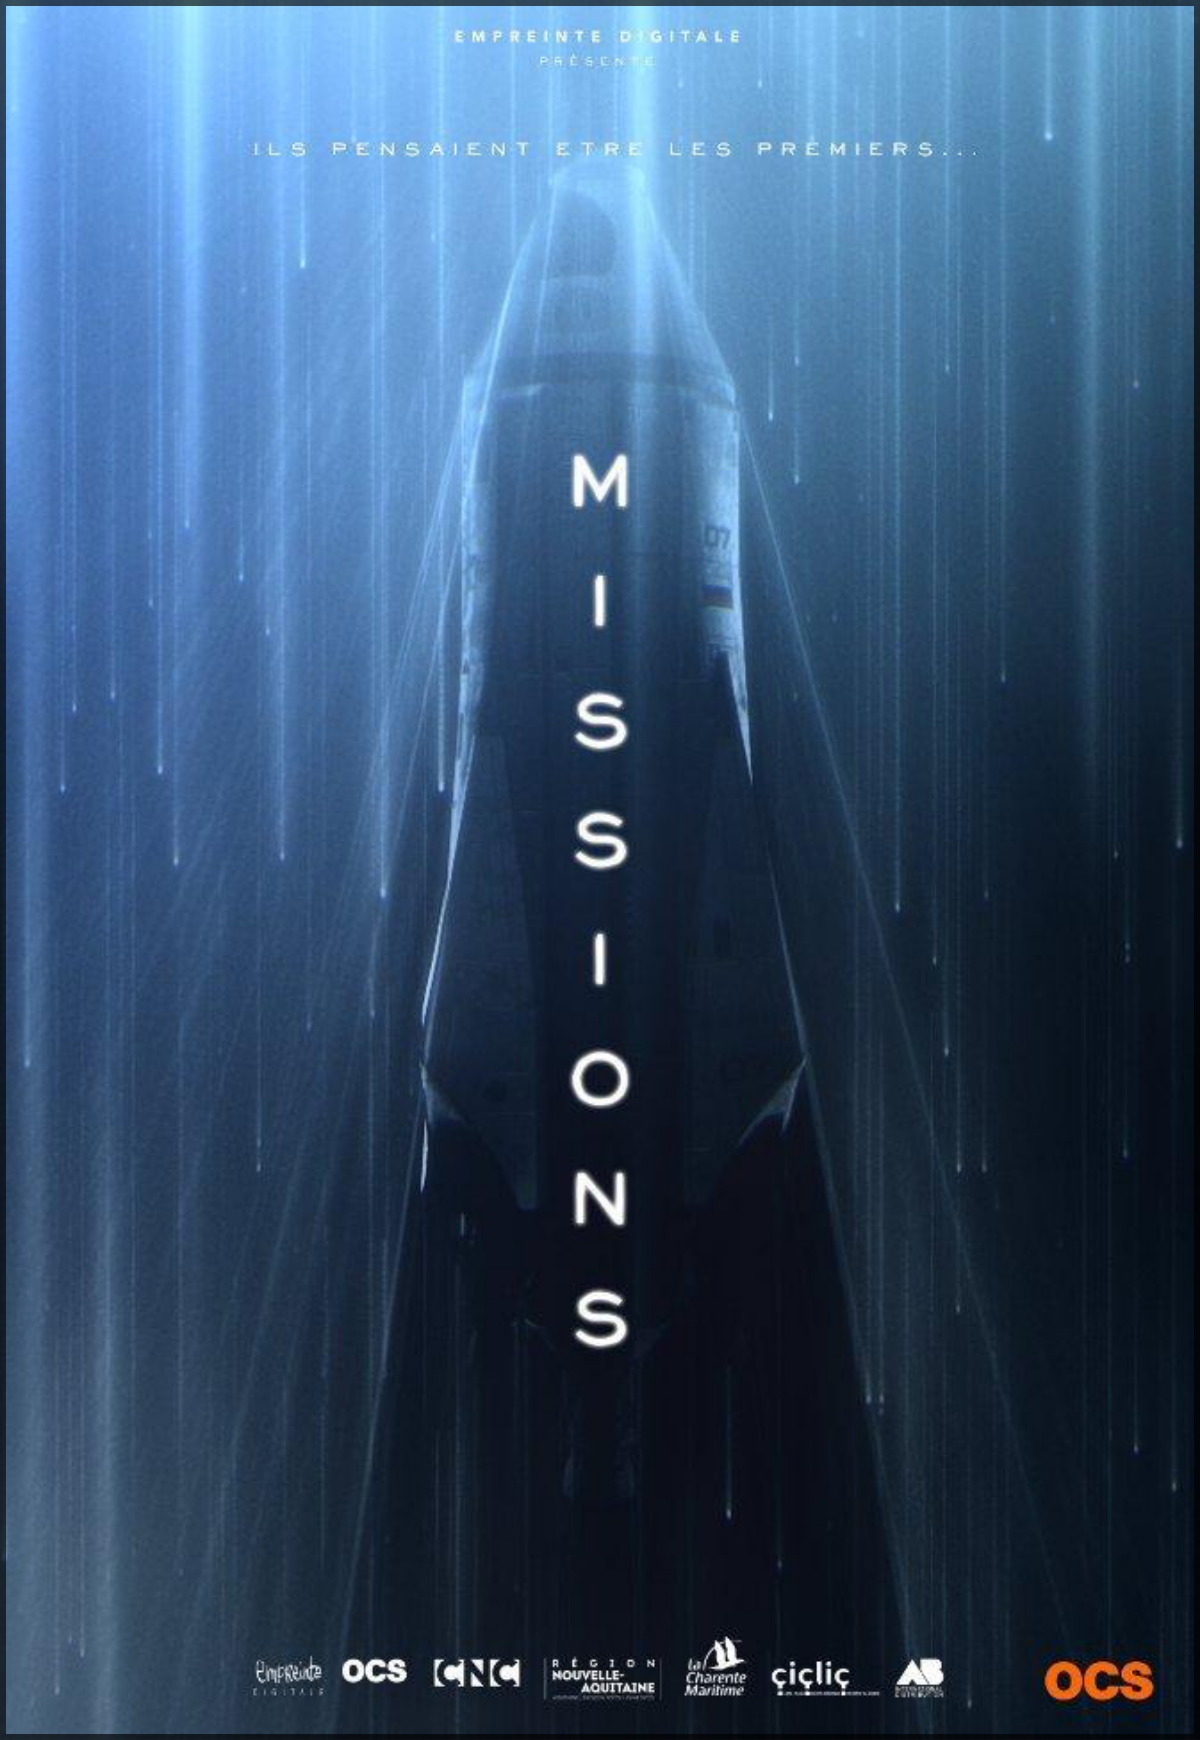 MISSIONS II : OCS – 410 SHOTS